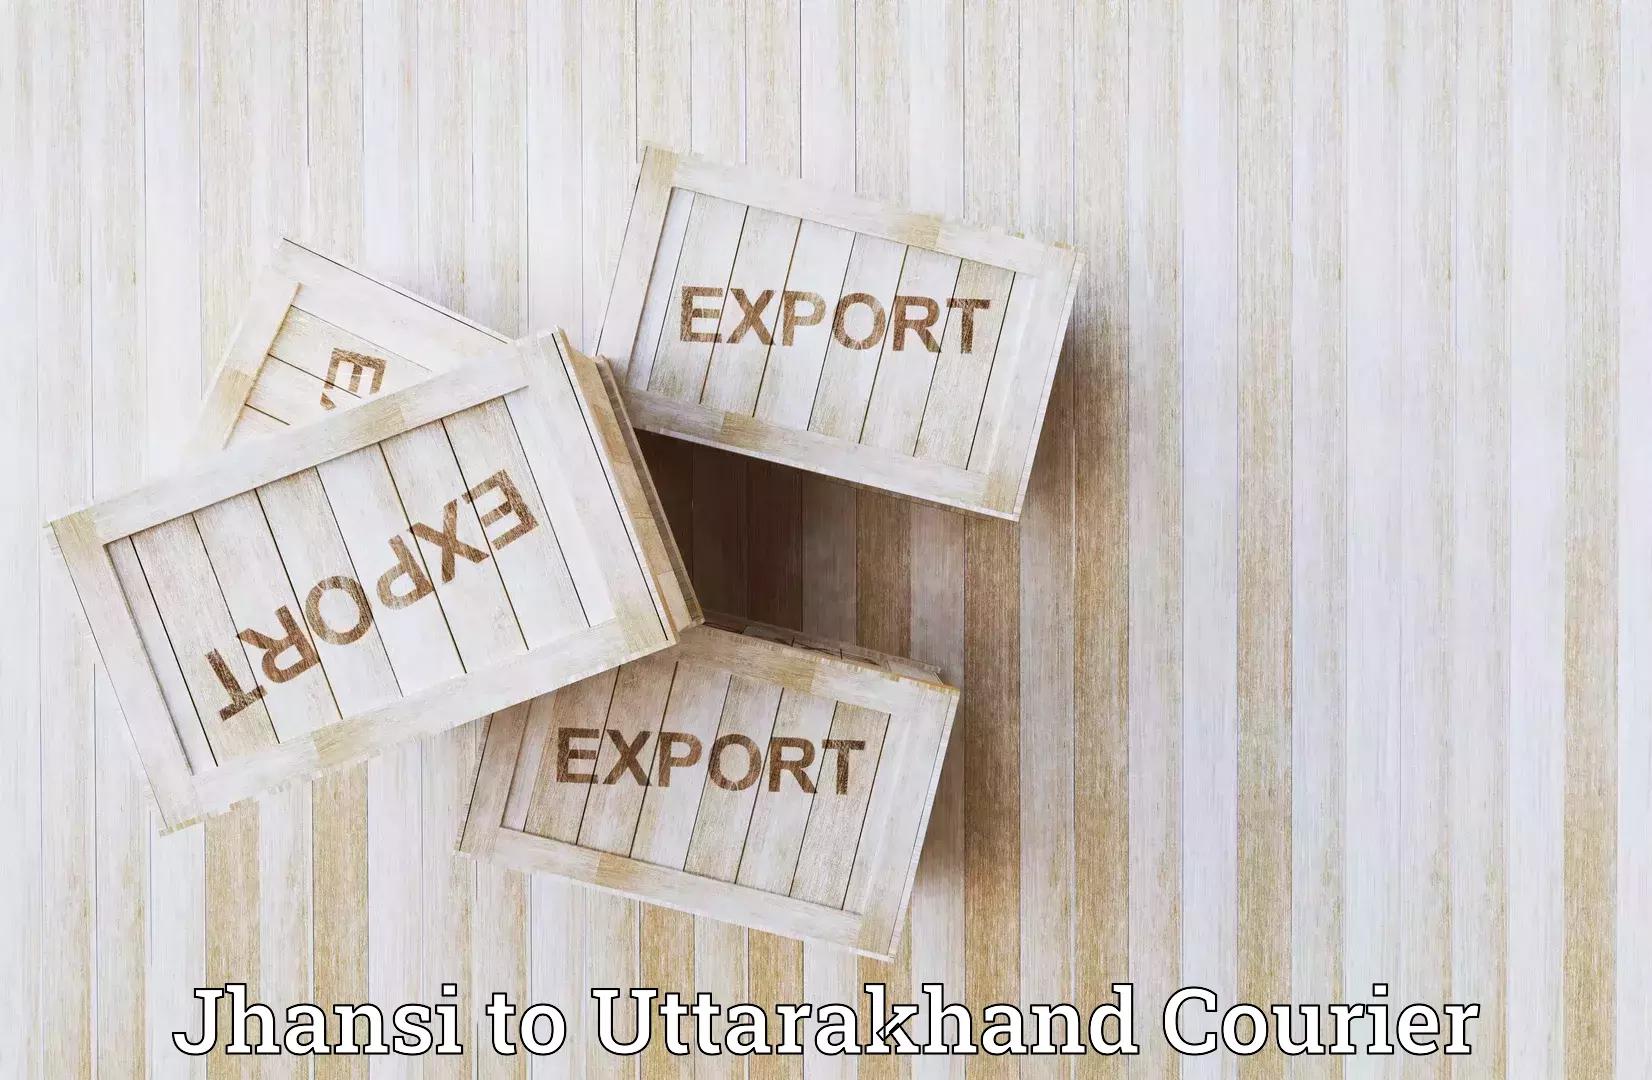 Courier app Jhansi to Uttarakhand